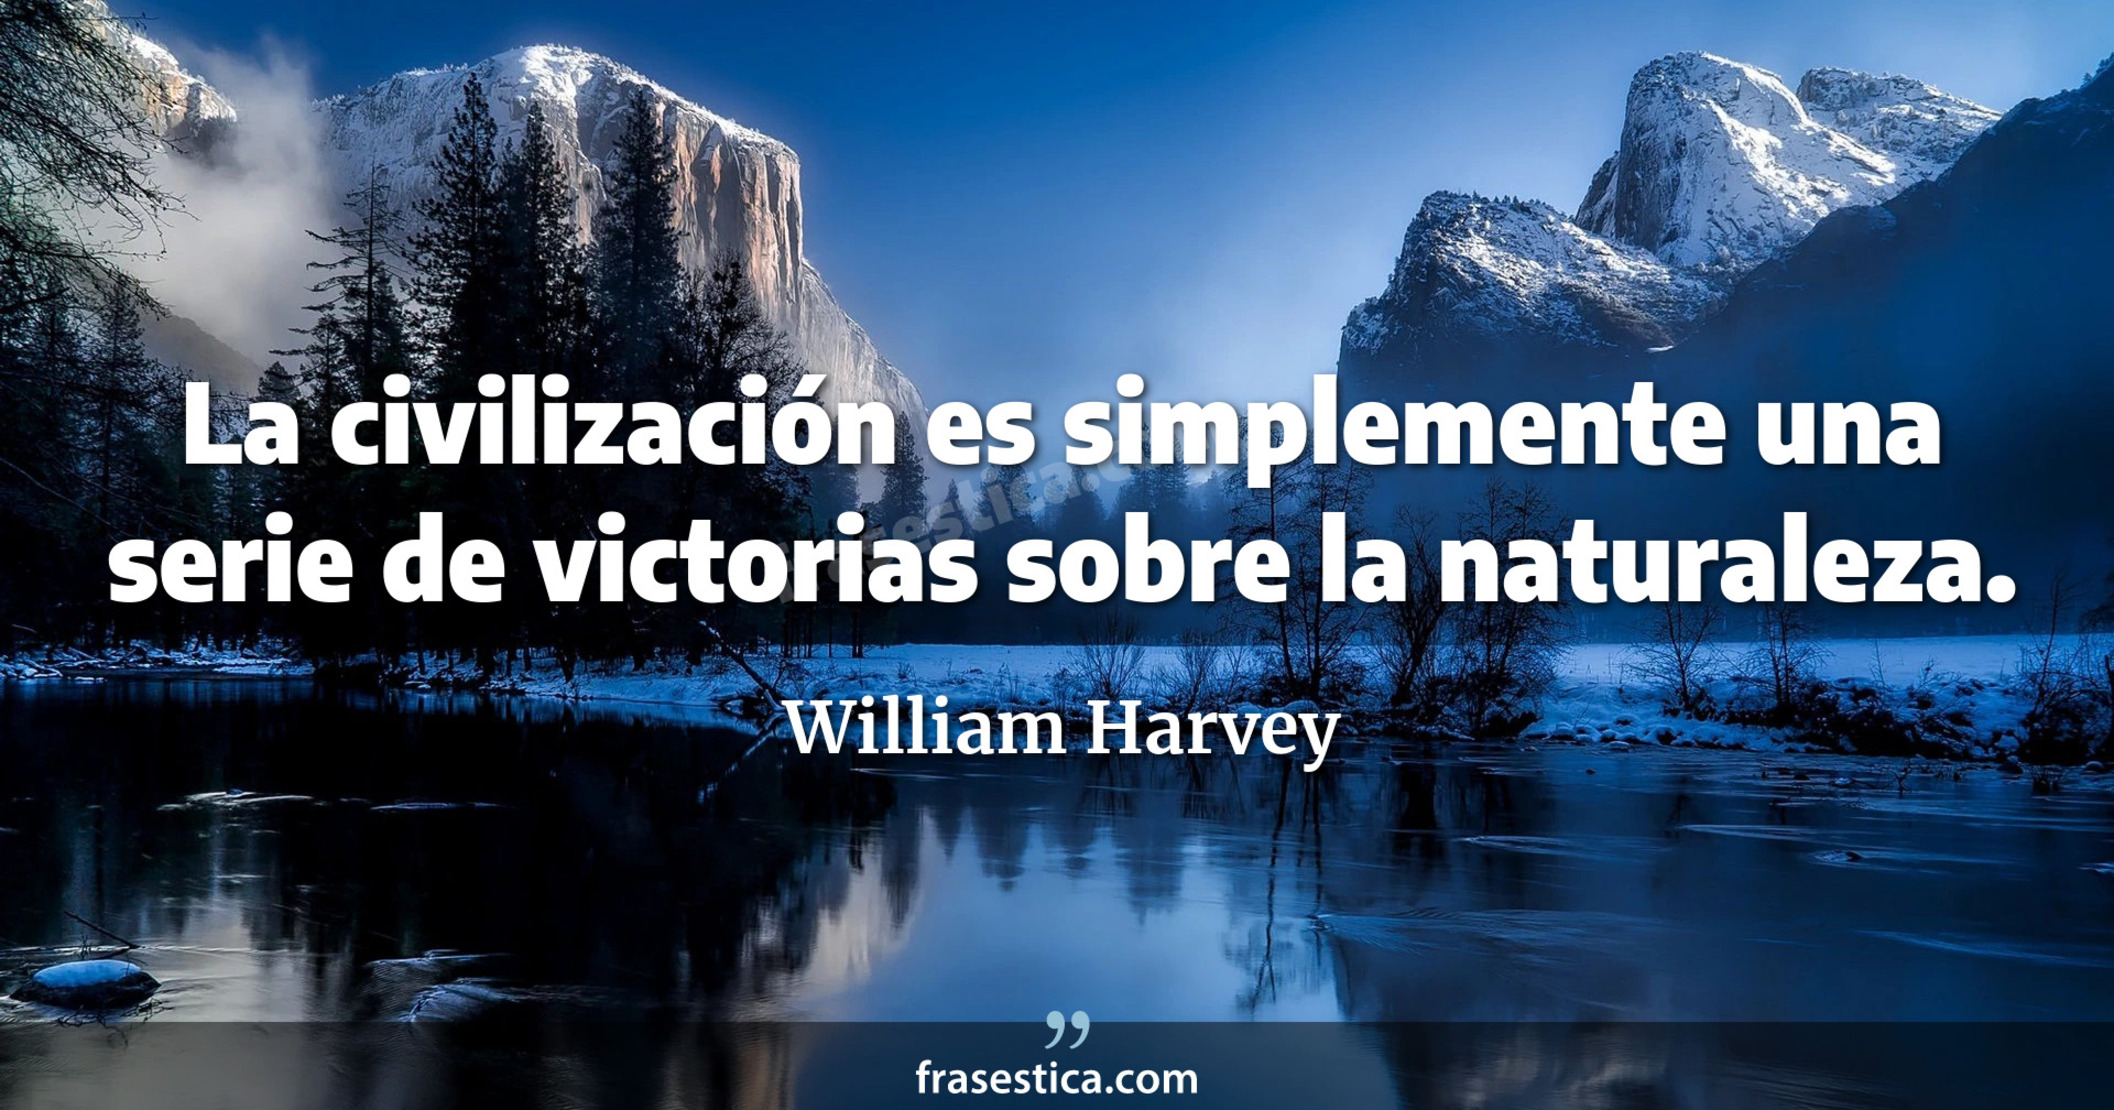 La civilización es simplemente una serie de victorias sobre la naturaleza. - William Harvey